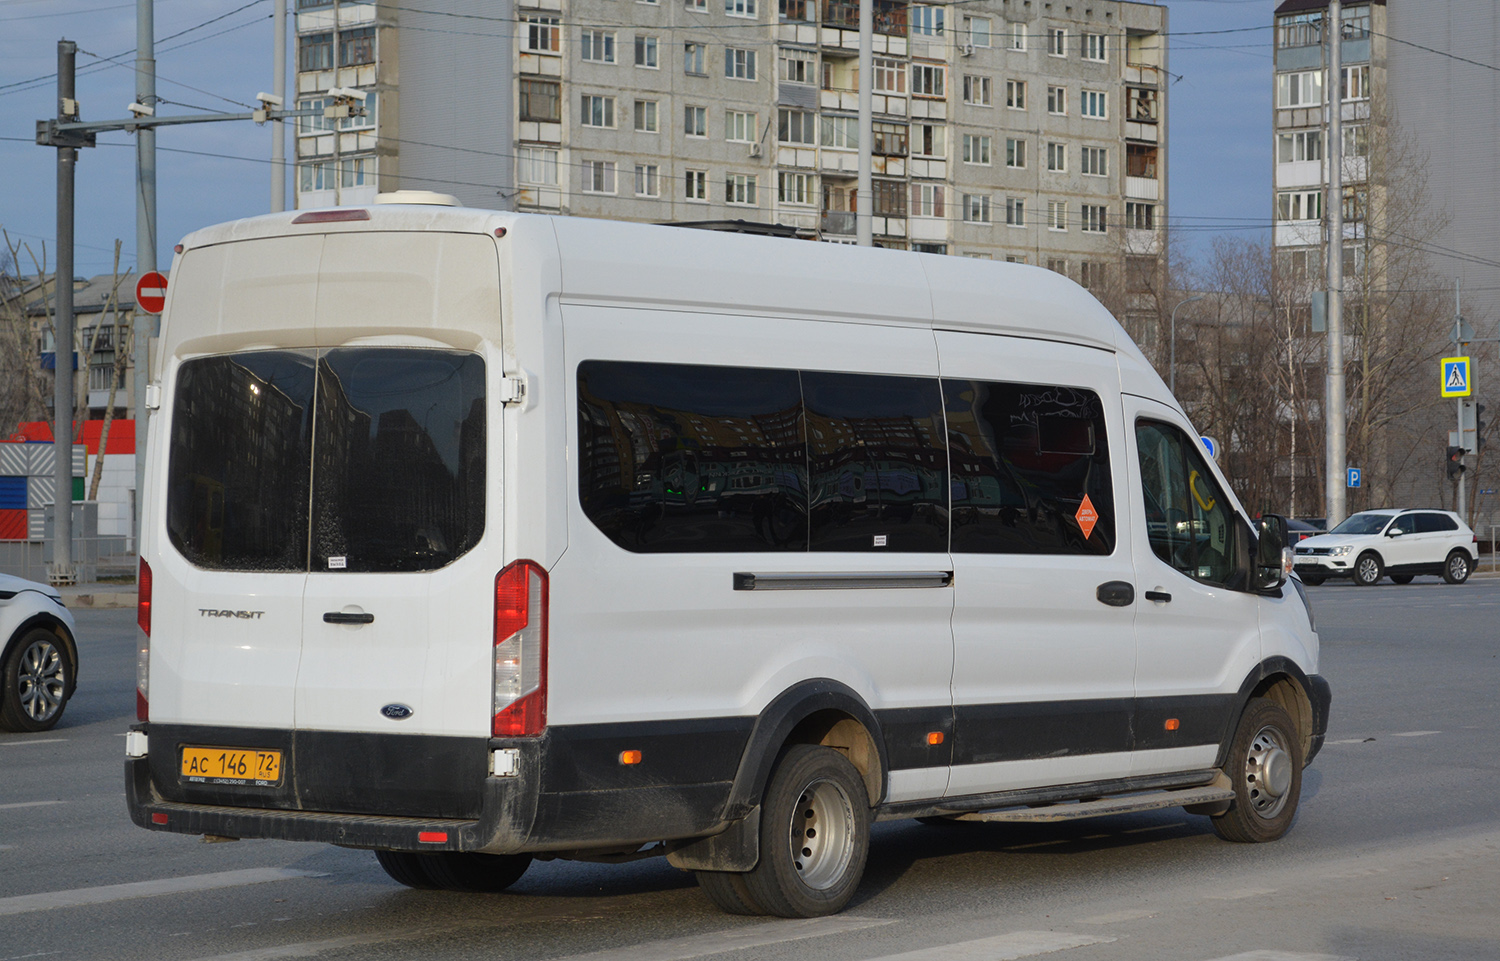 Тюменская область, Ford Transit FBD [RUS] (X2F.ESG.) № АС 146 72